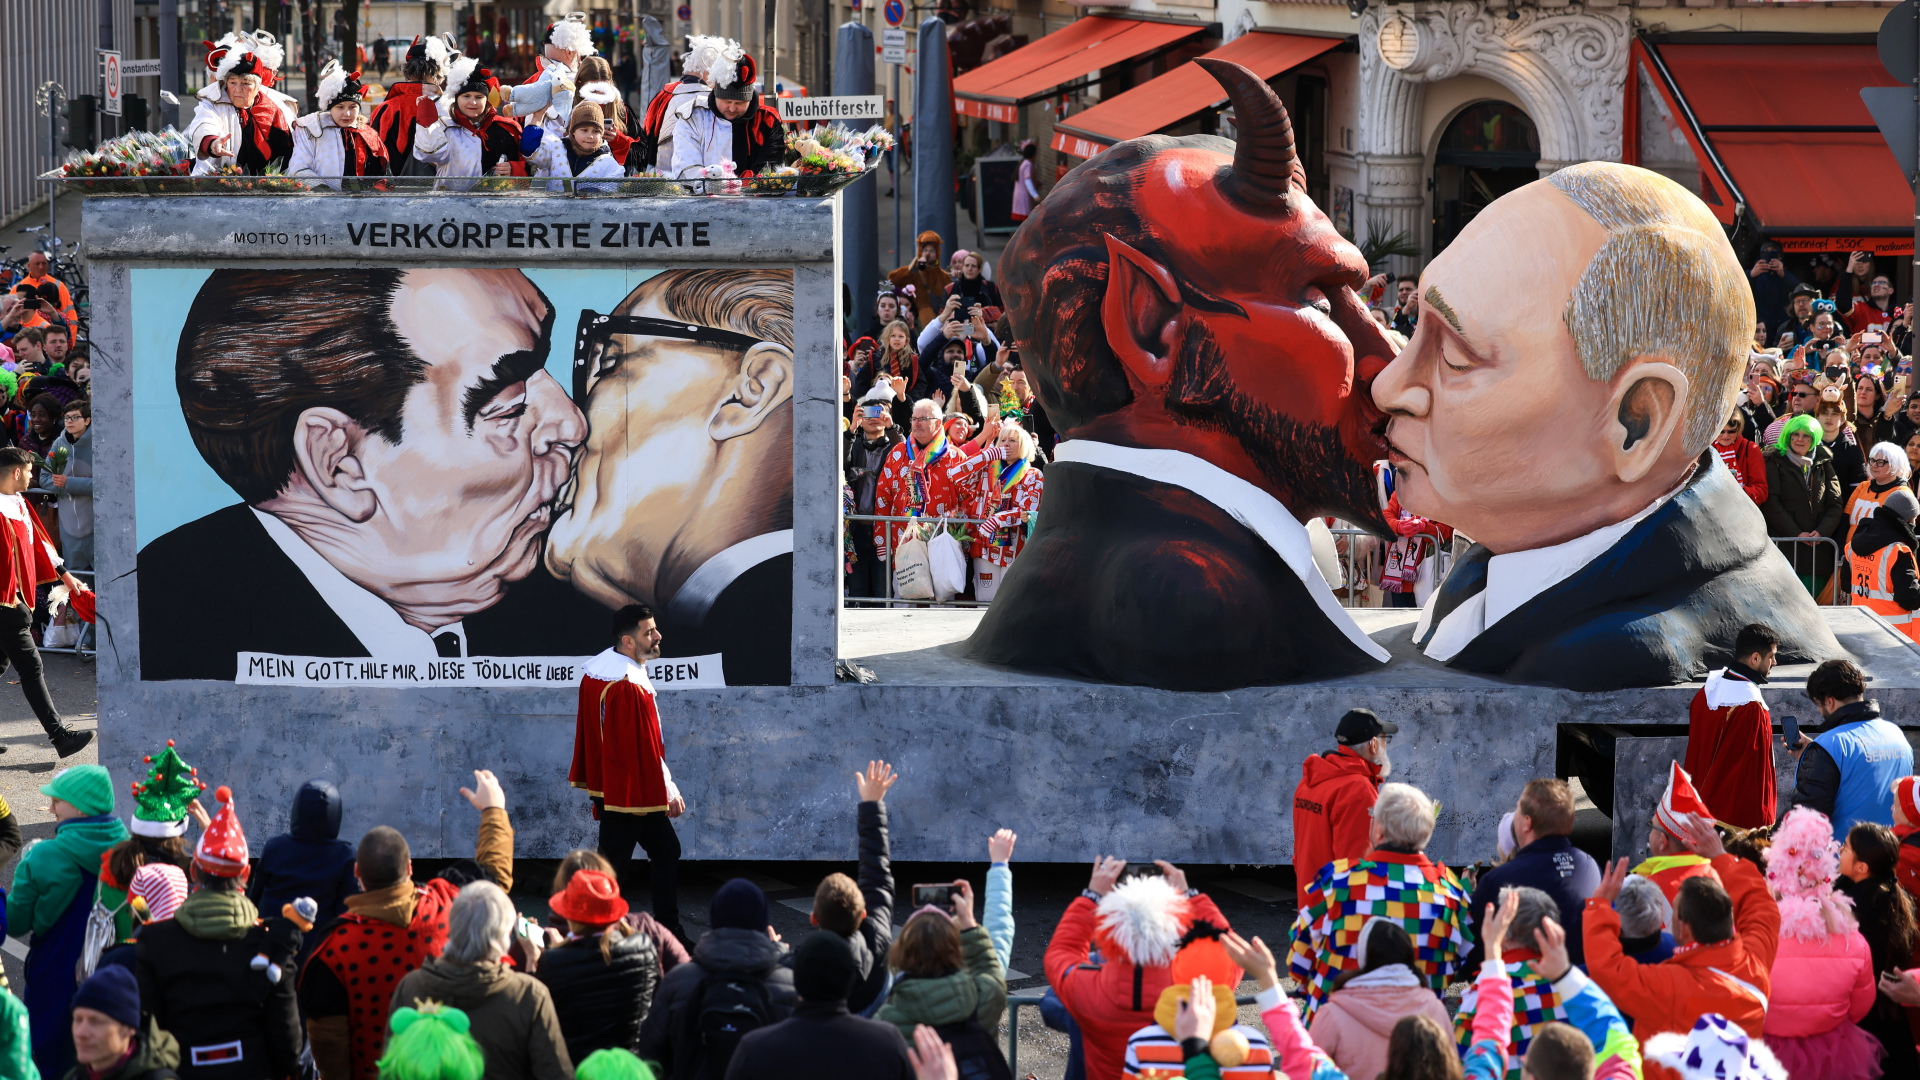 Der Mottowagen "Verkörperte Zitate", dem Motto der Session von 1911, mit einer Darstellung des russischen Präsidenten Putin der den Teufel küsst, fährt im Festumzug mit. | dpa